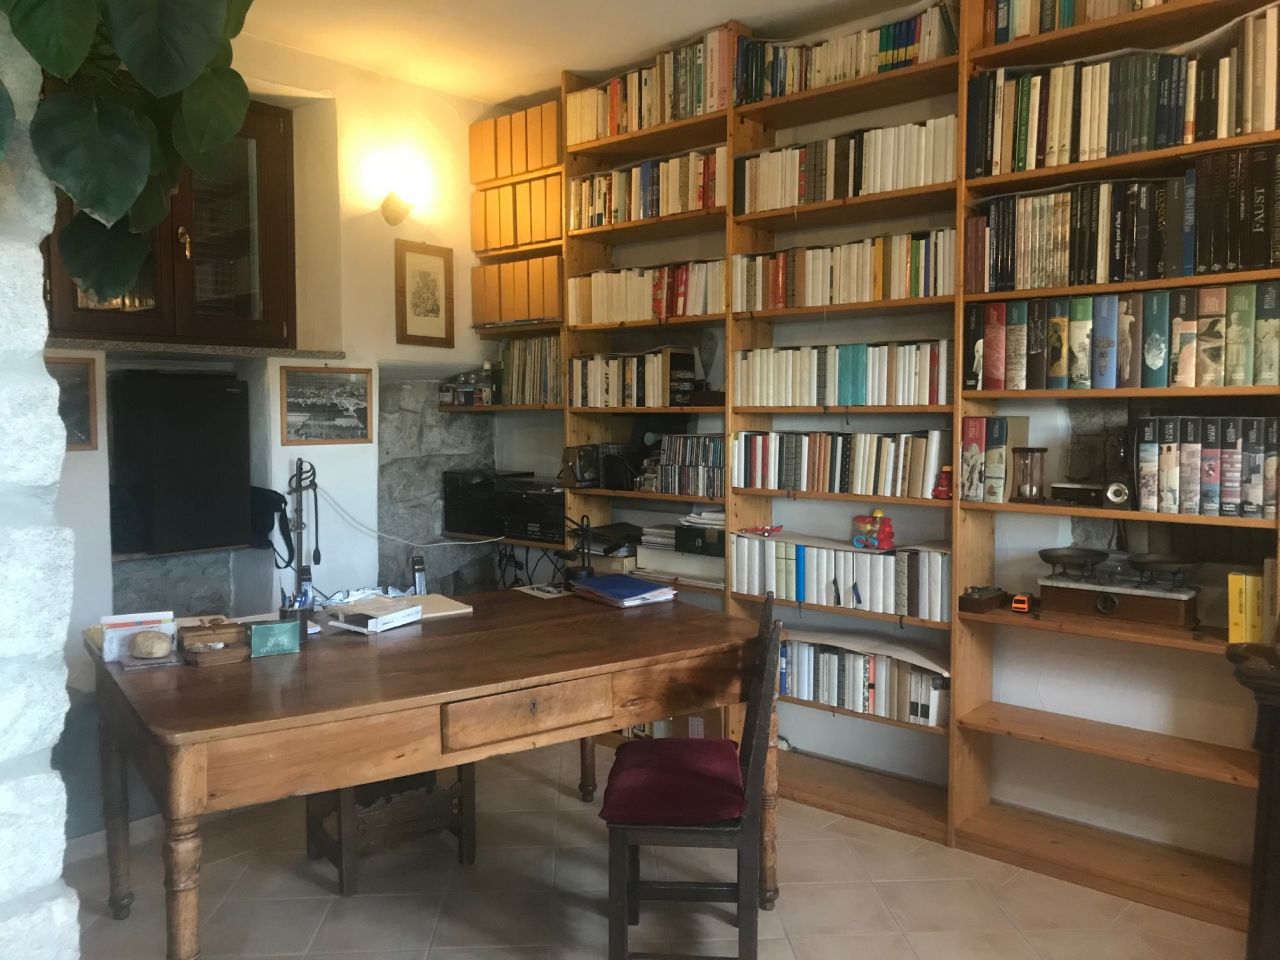 Wohnbereich mit Bibliothek